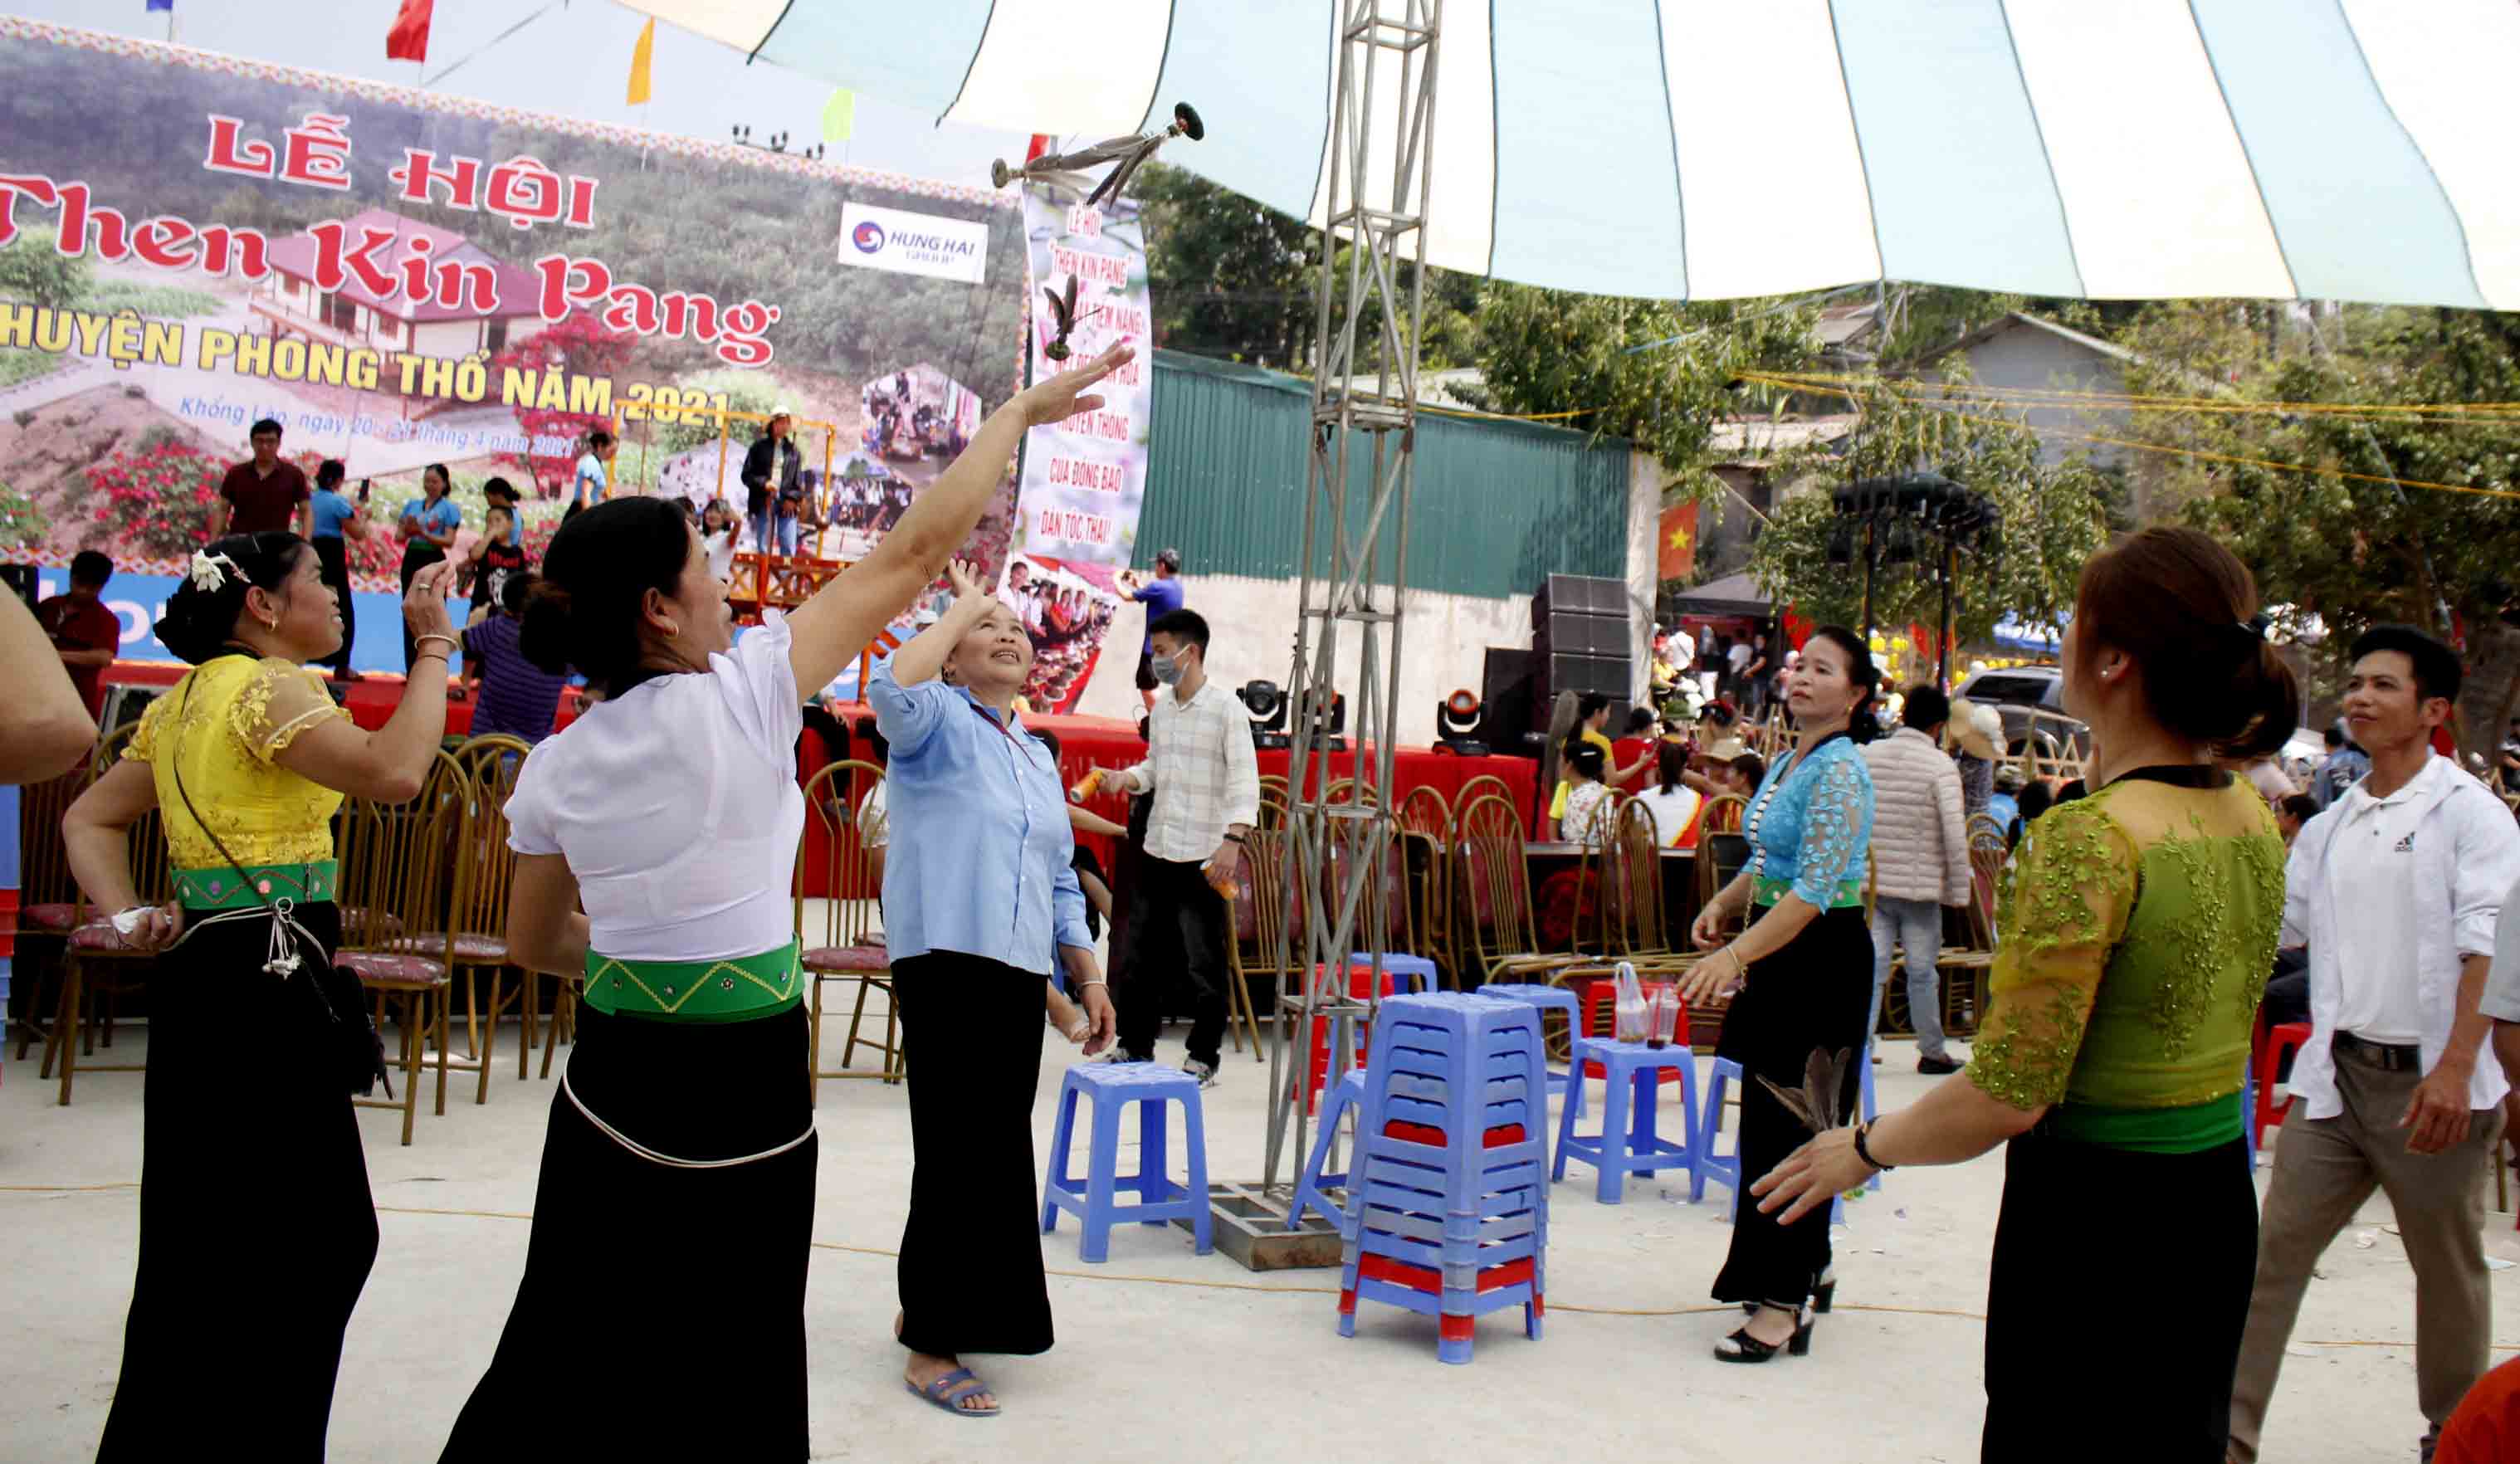 Nhân dân xã Khổng Lào (huyện Phong Thổ) vui chơi trò Én cáy tại lễ hội “Then Kin Pang”. 